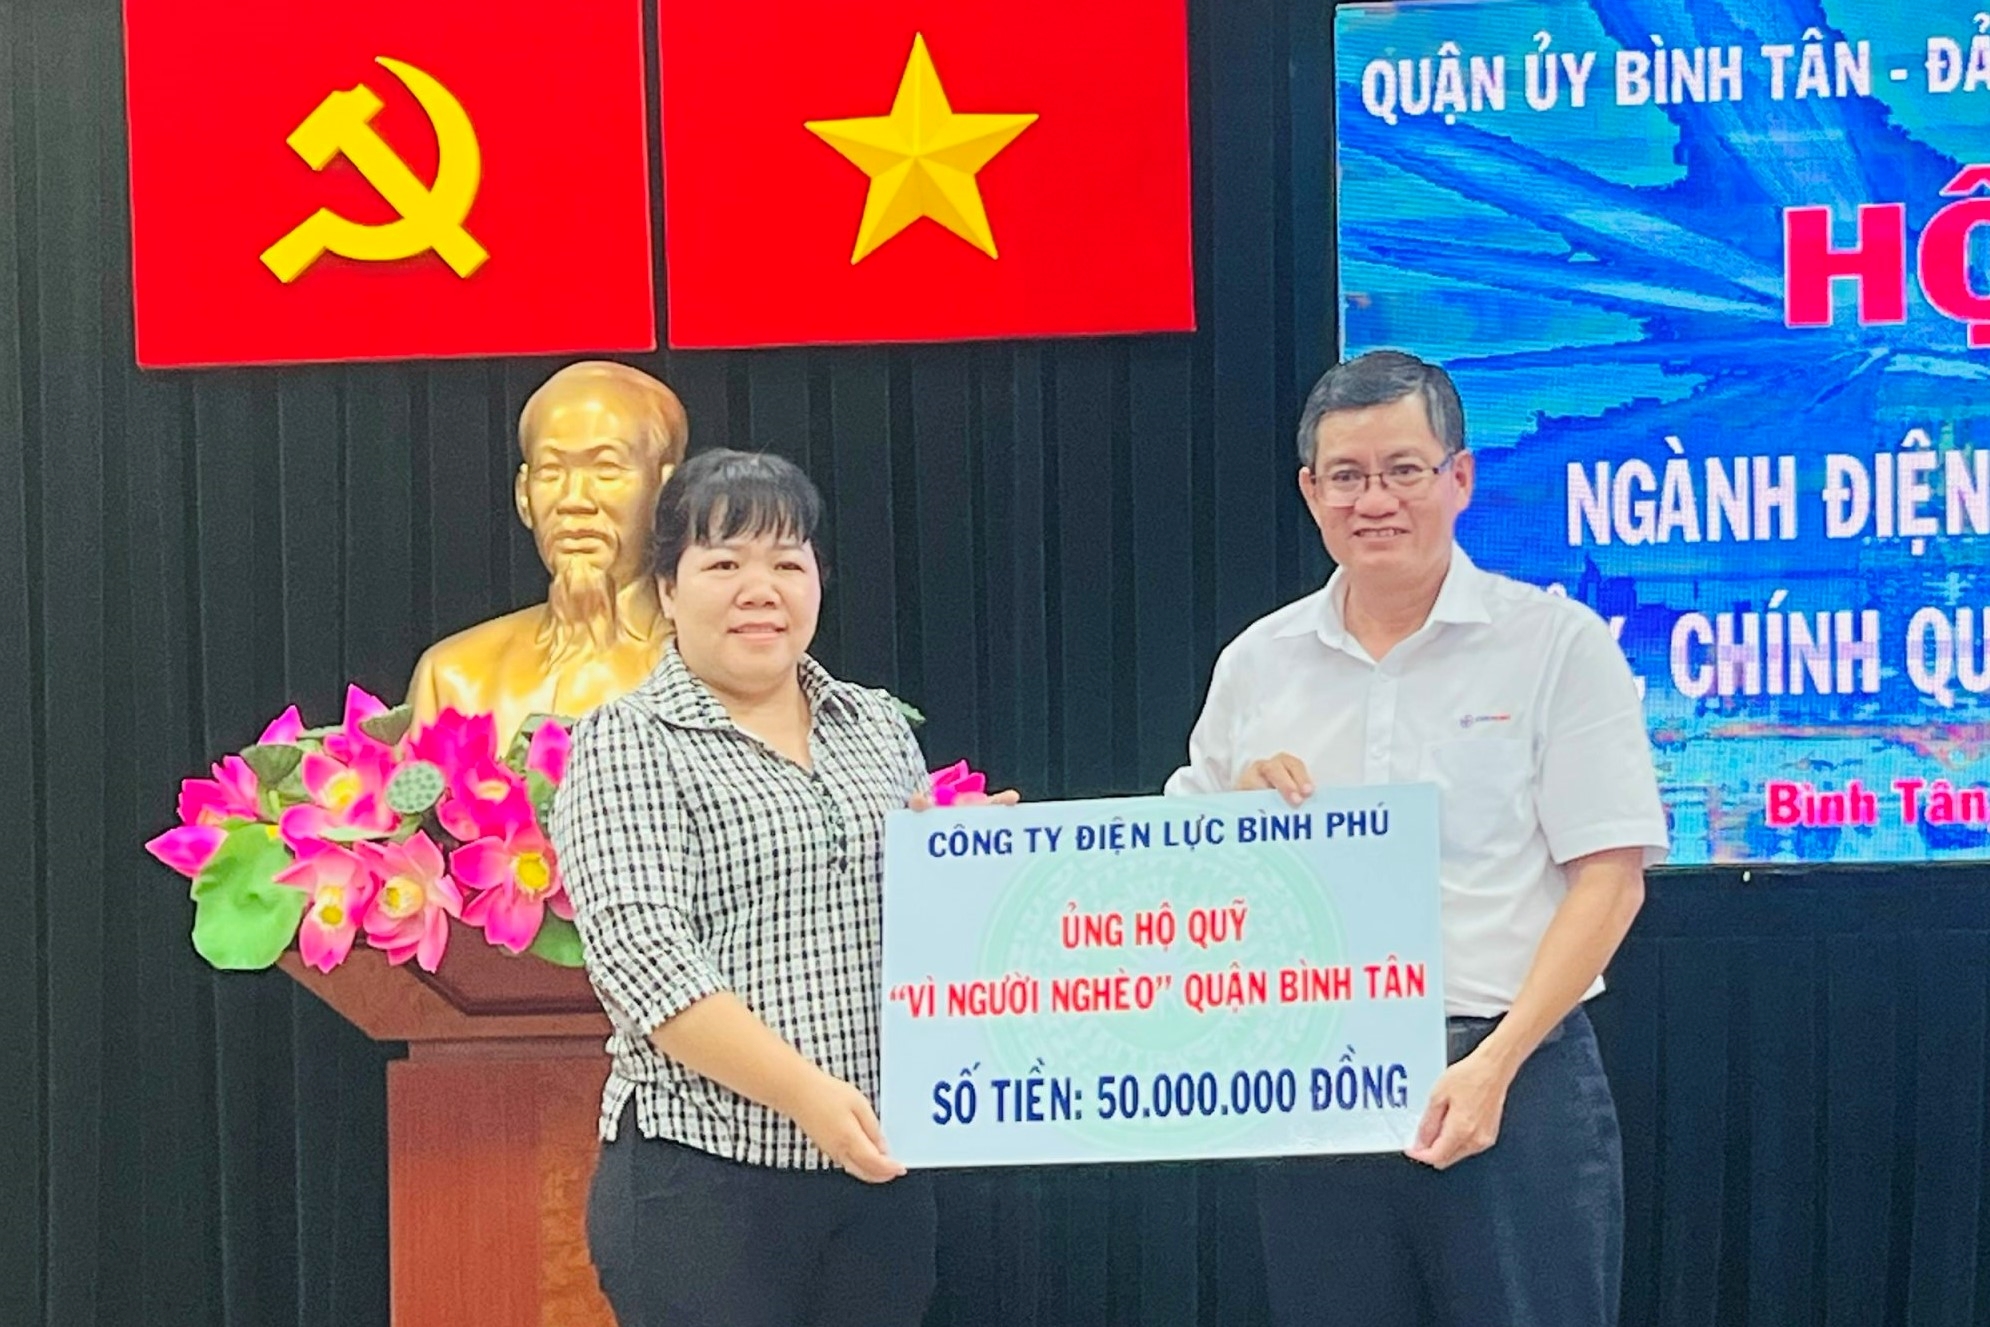 Tại hội nghị, Công ty Điện lực Bình Phú đã trao 50 triệu đồng cho quỹ “Vì người nghèo” Q. Bình Tân